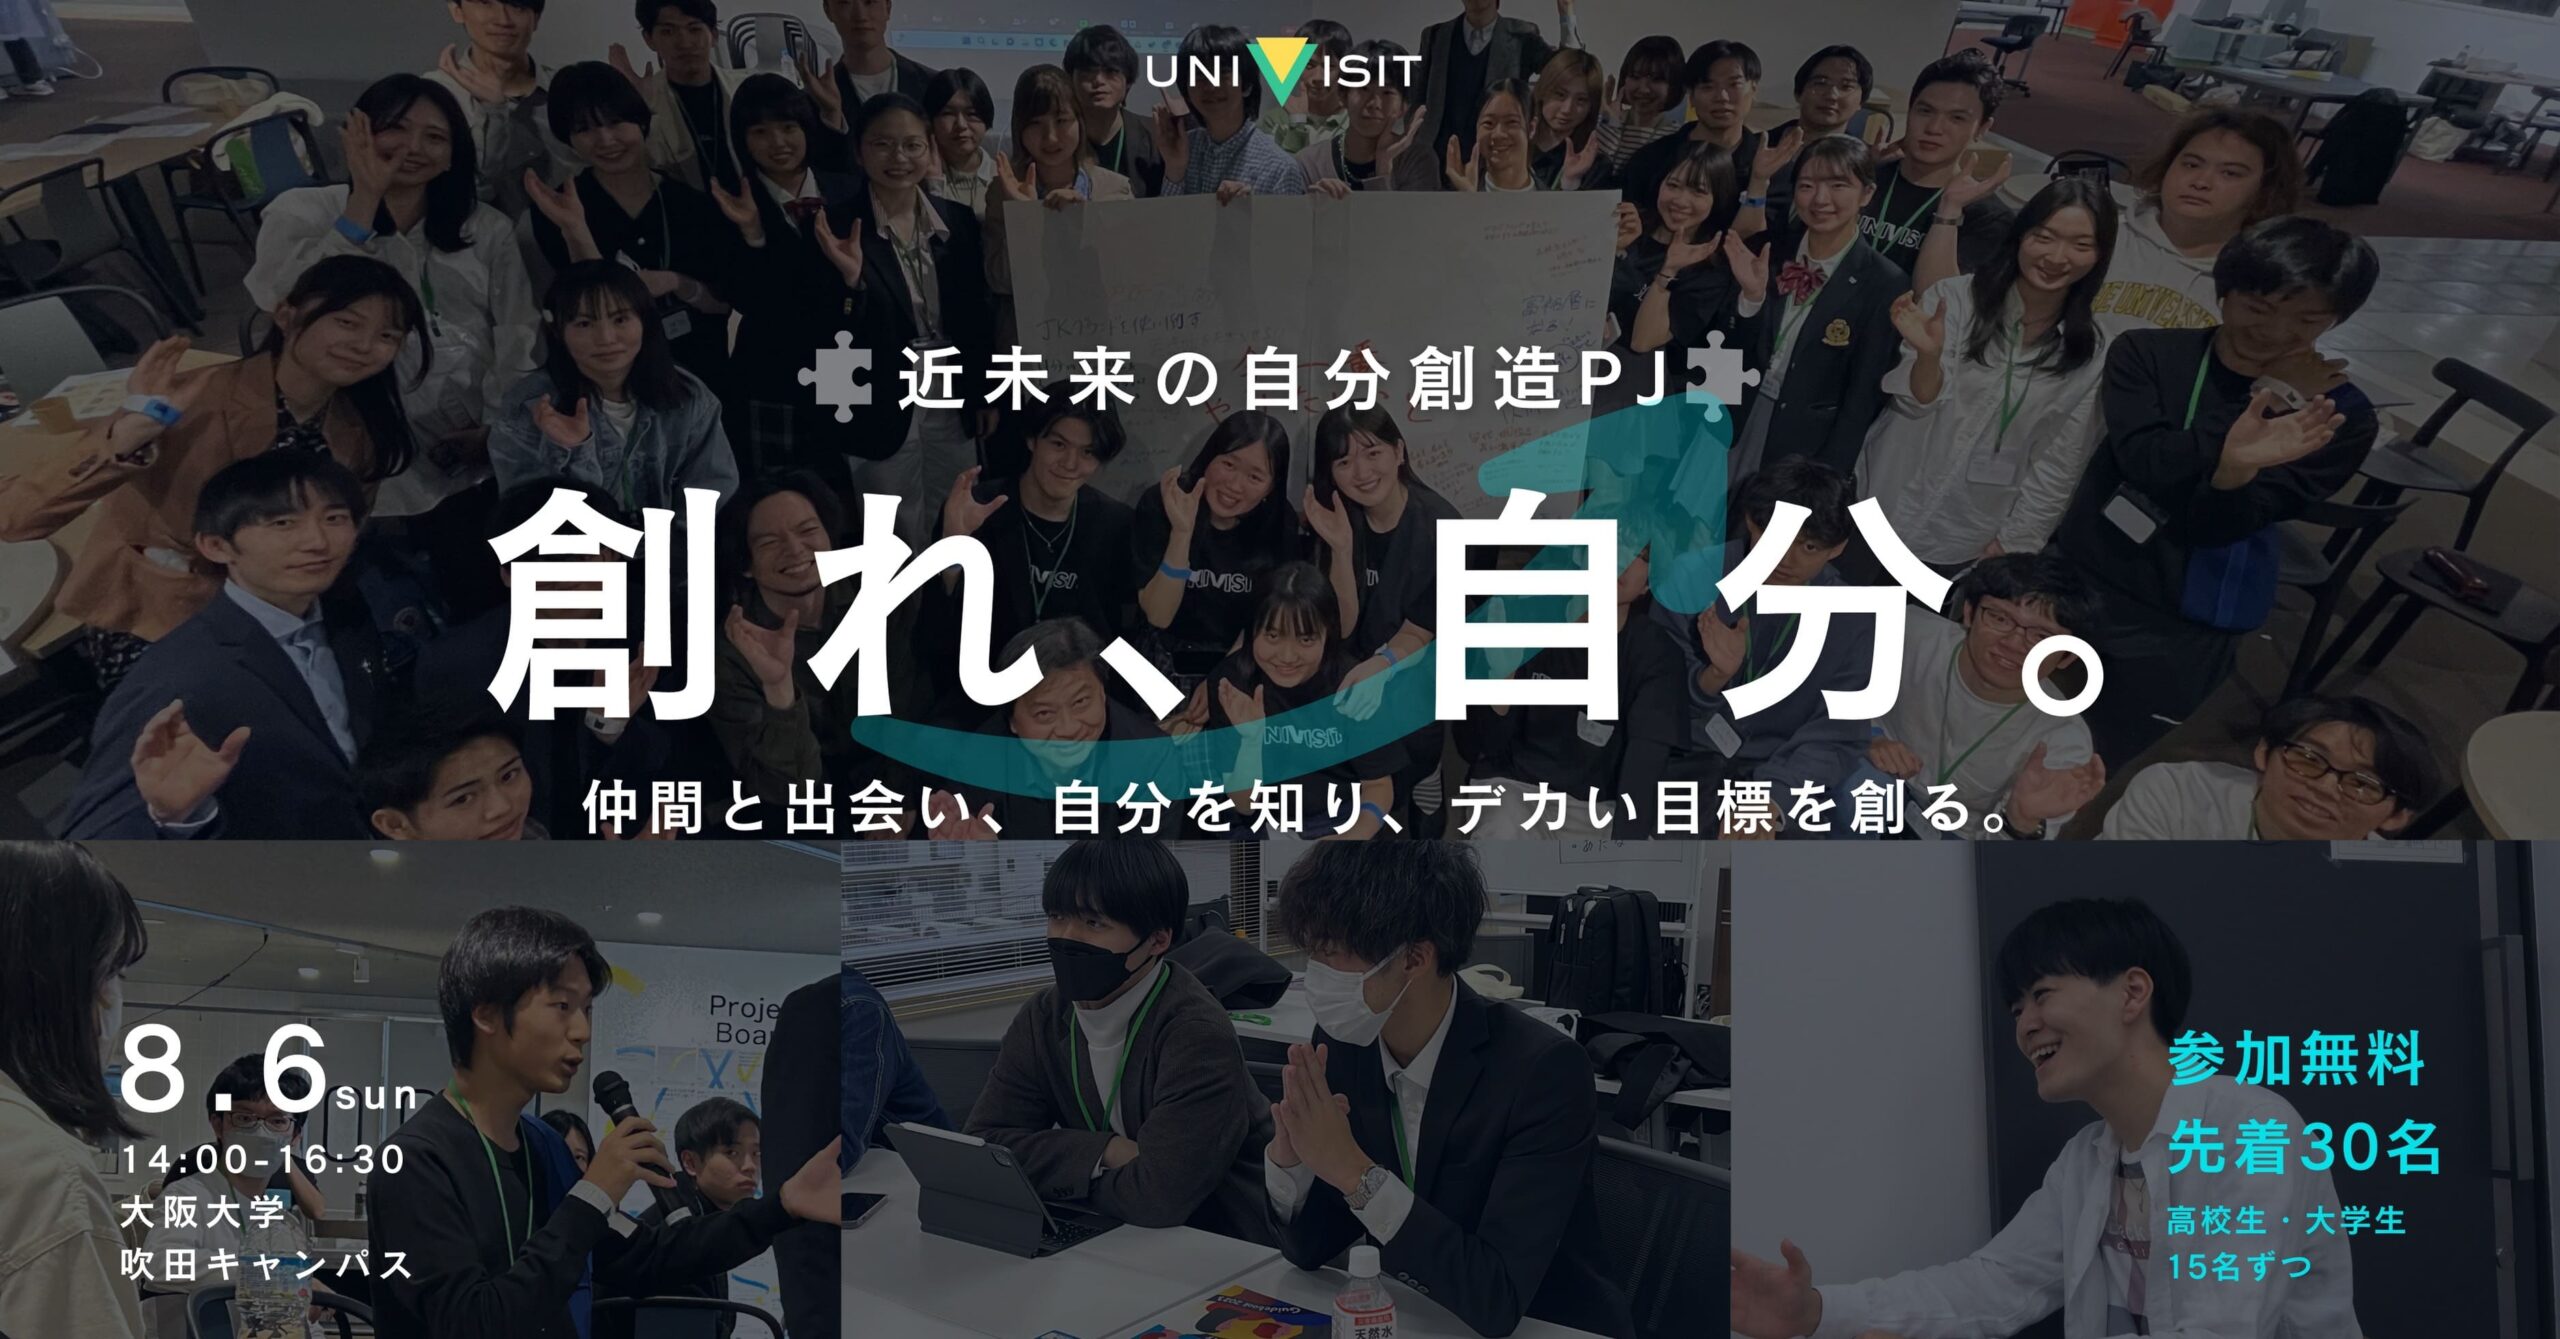 【大阪での対面イベント開催】8月6日(日) 、近未来の自分創造プログラムとして、『創れ、自分。』を開催